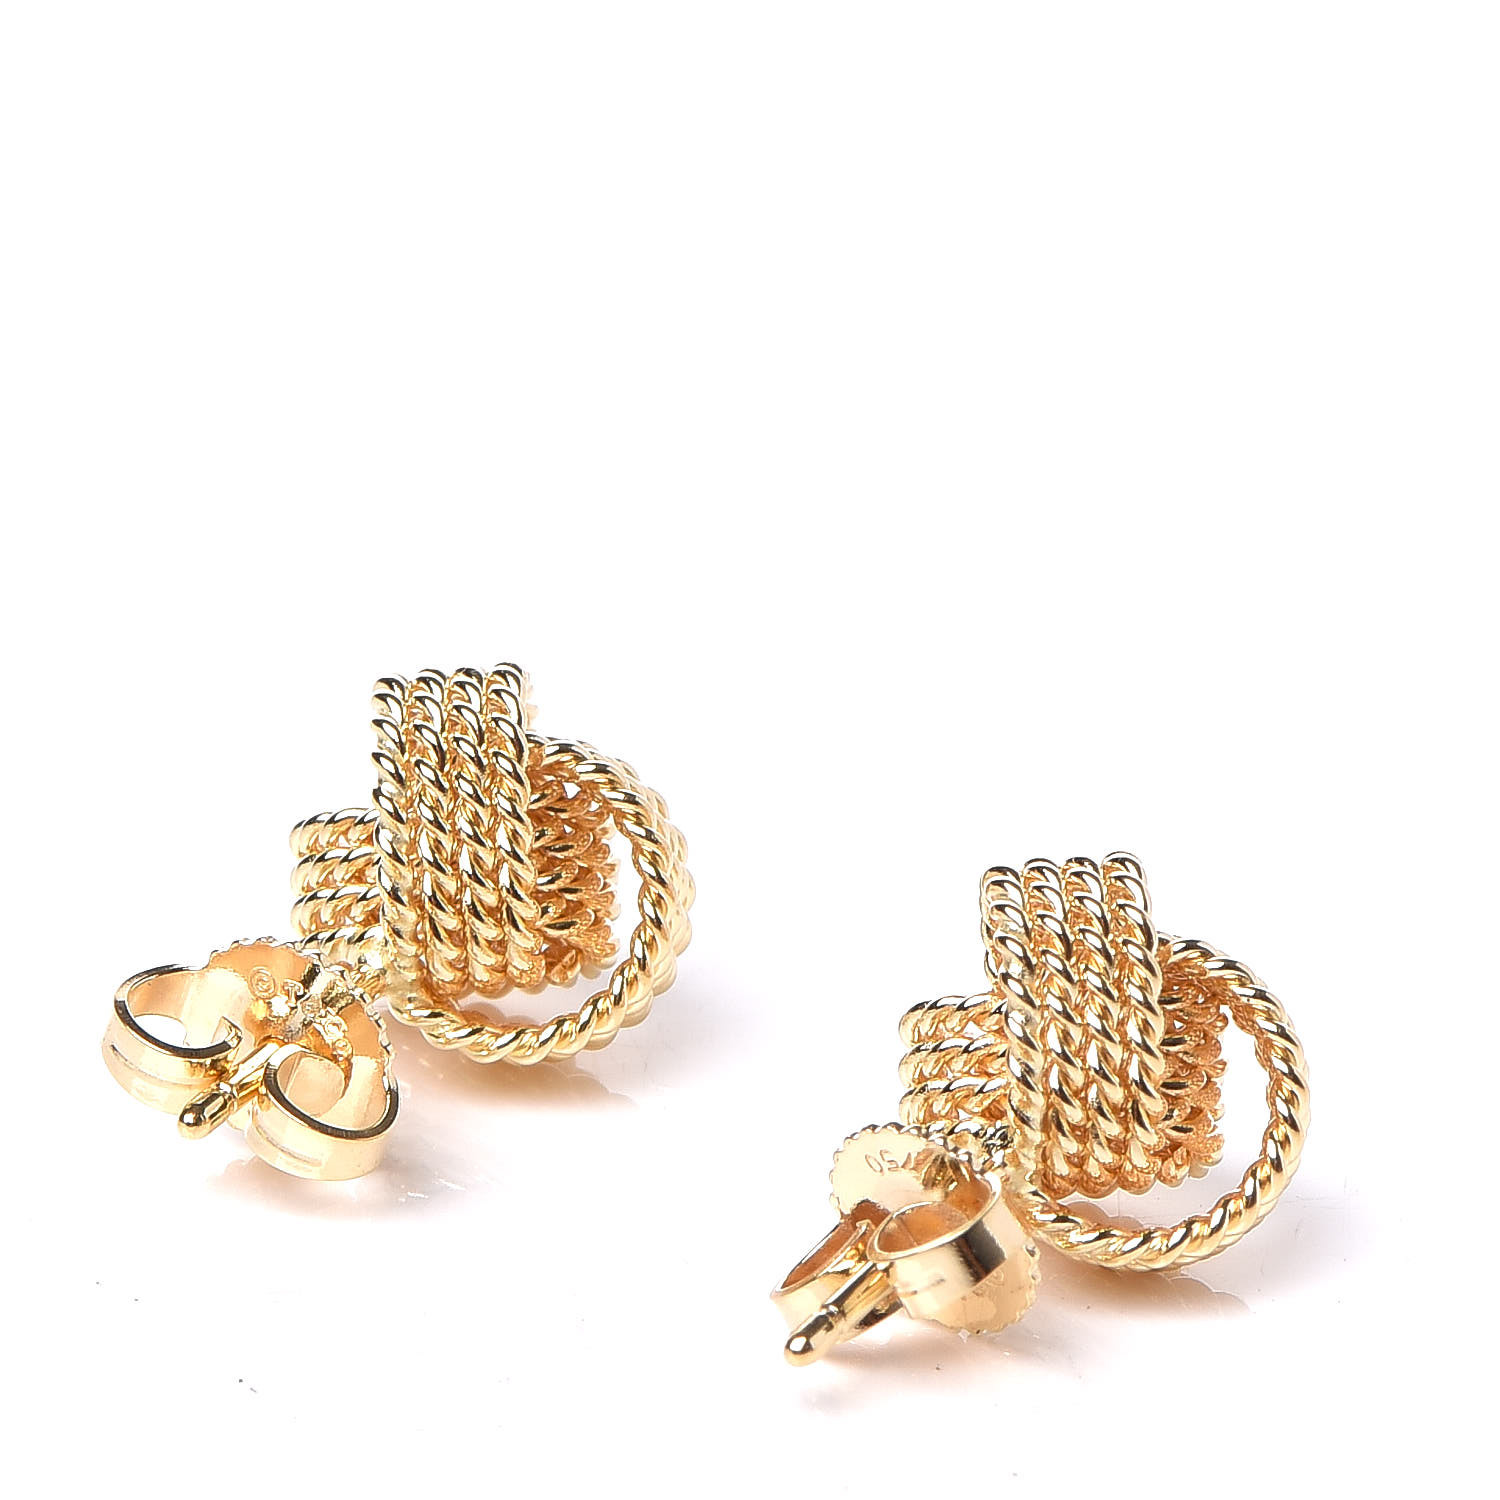 tiffany twist knot earrings gold